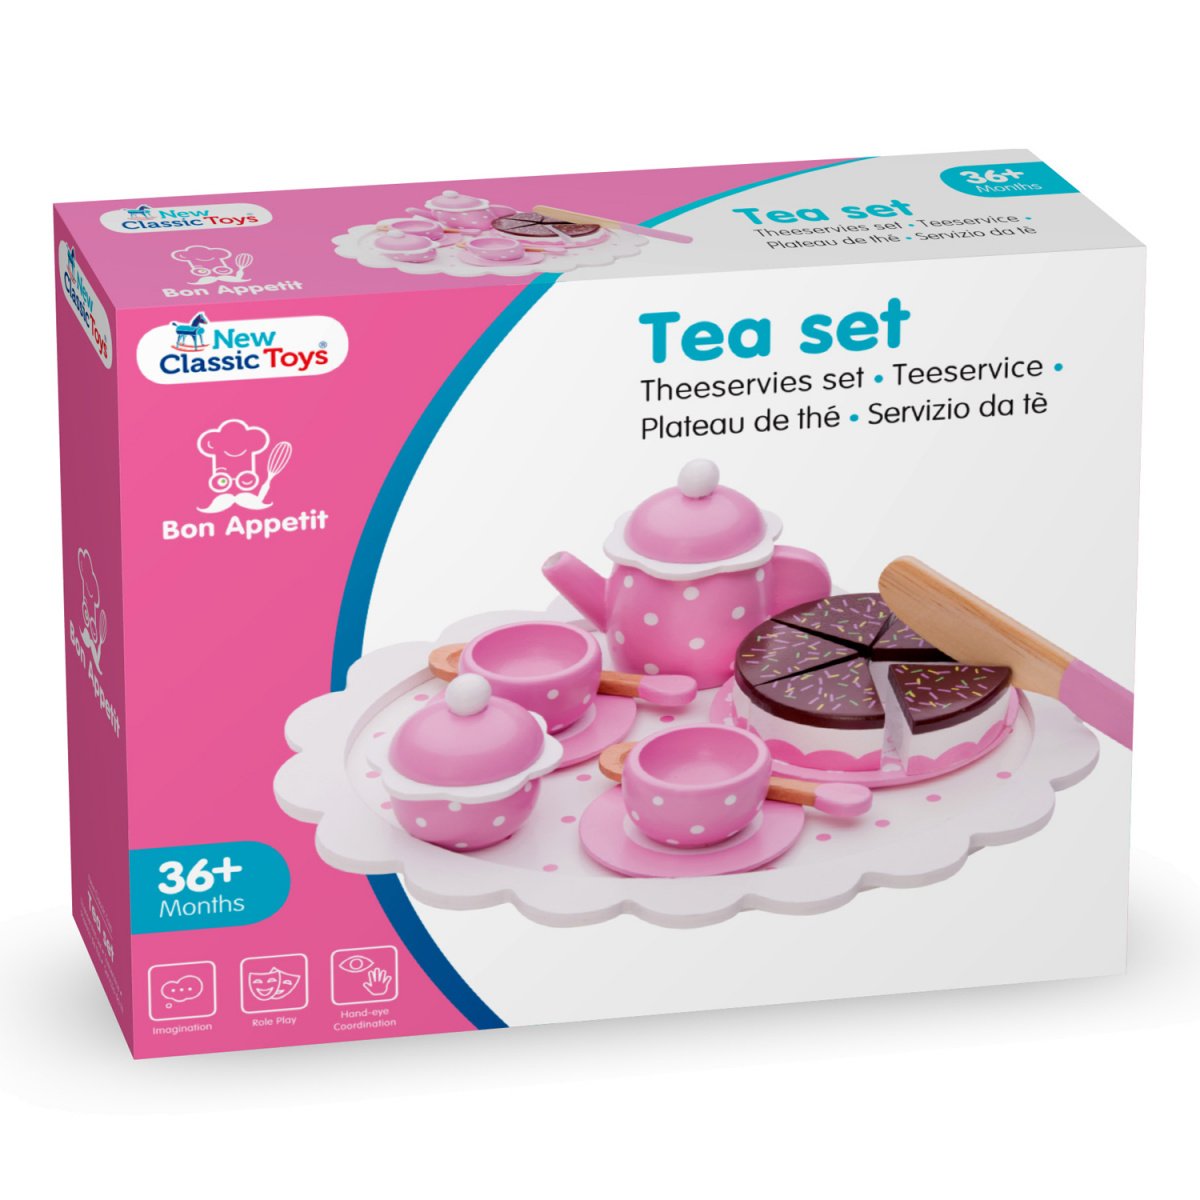 Іграшковий посуд New Classic Toys Чайний набір, рожевий (10620) - фото 4